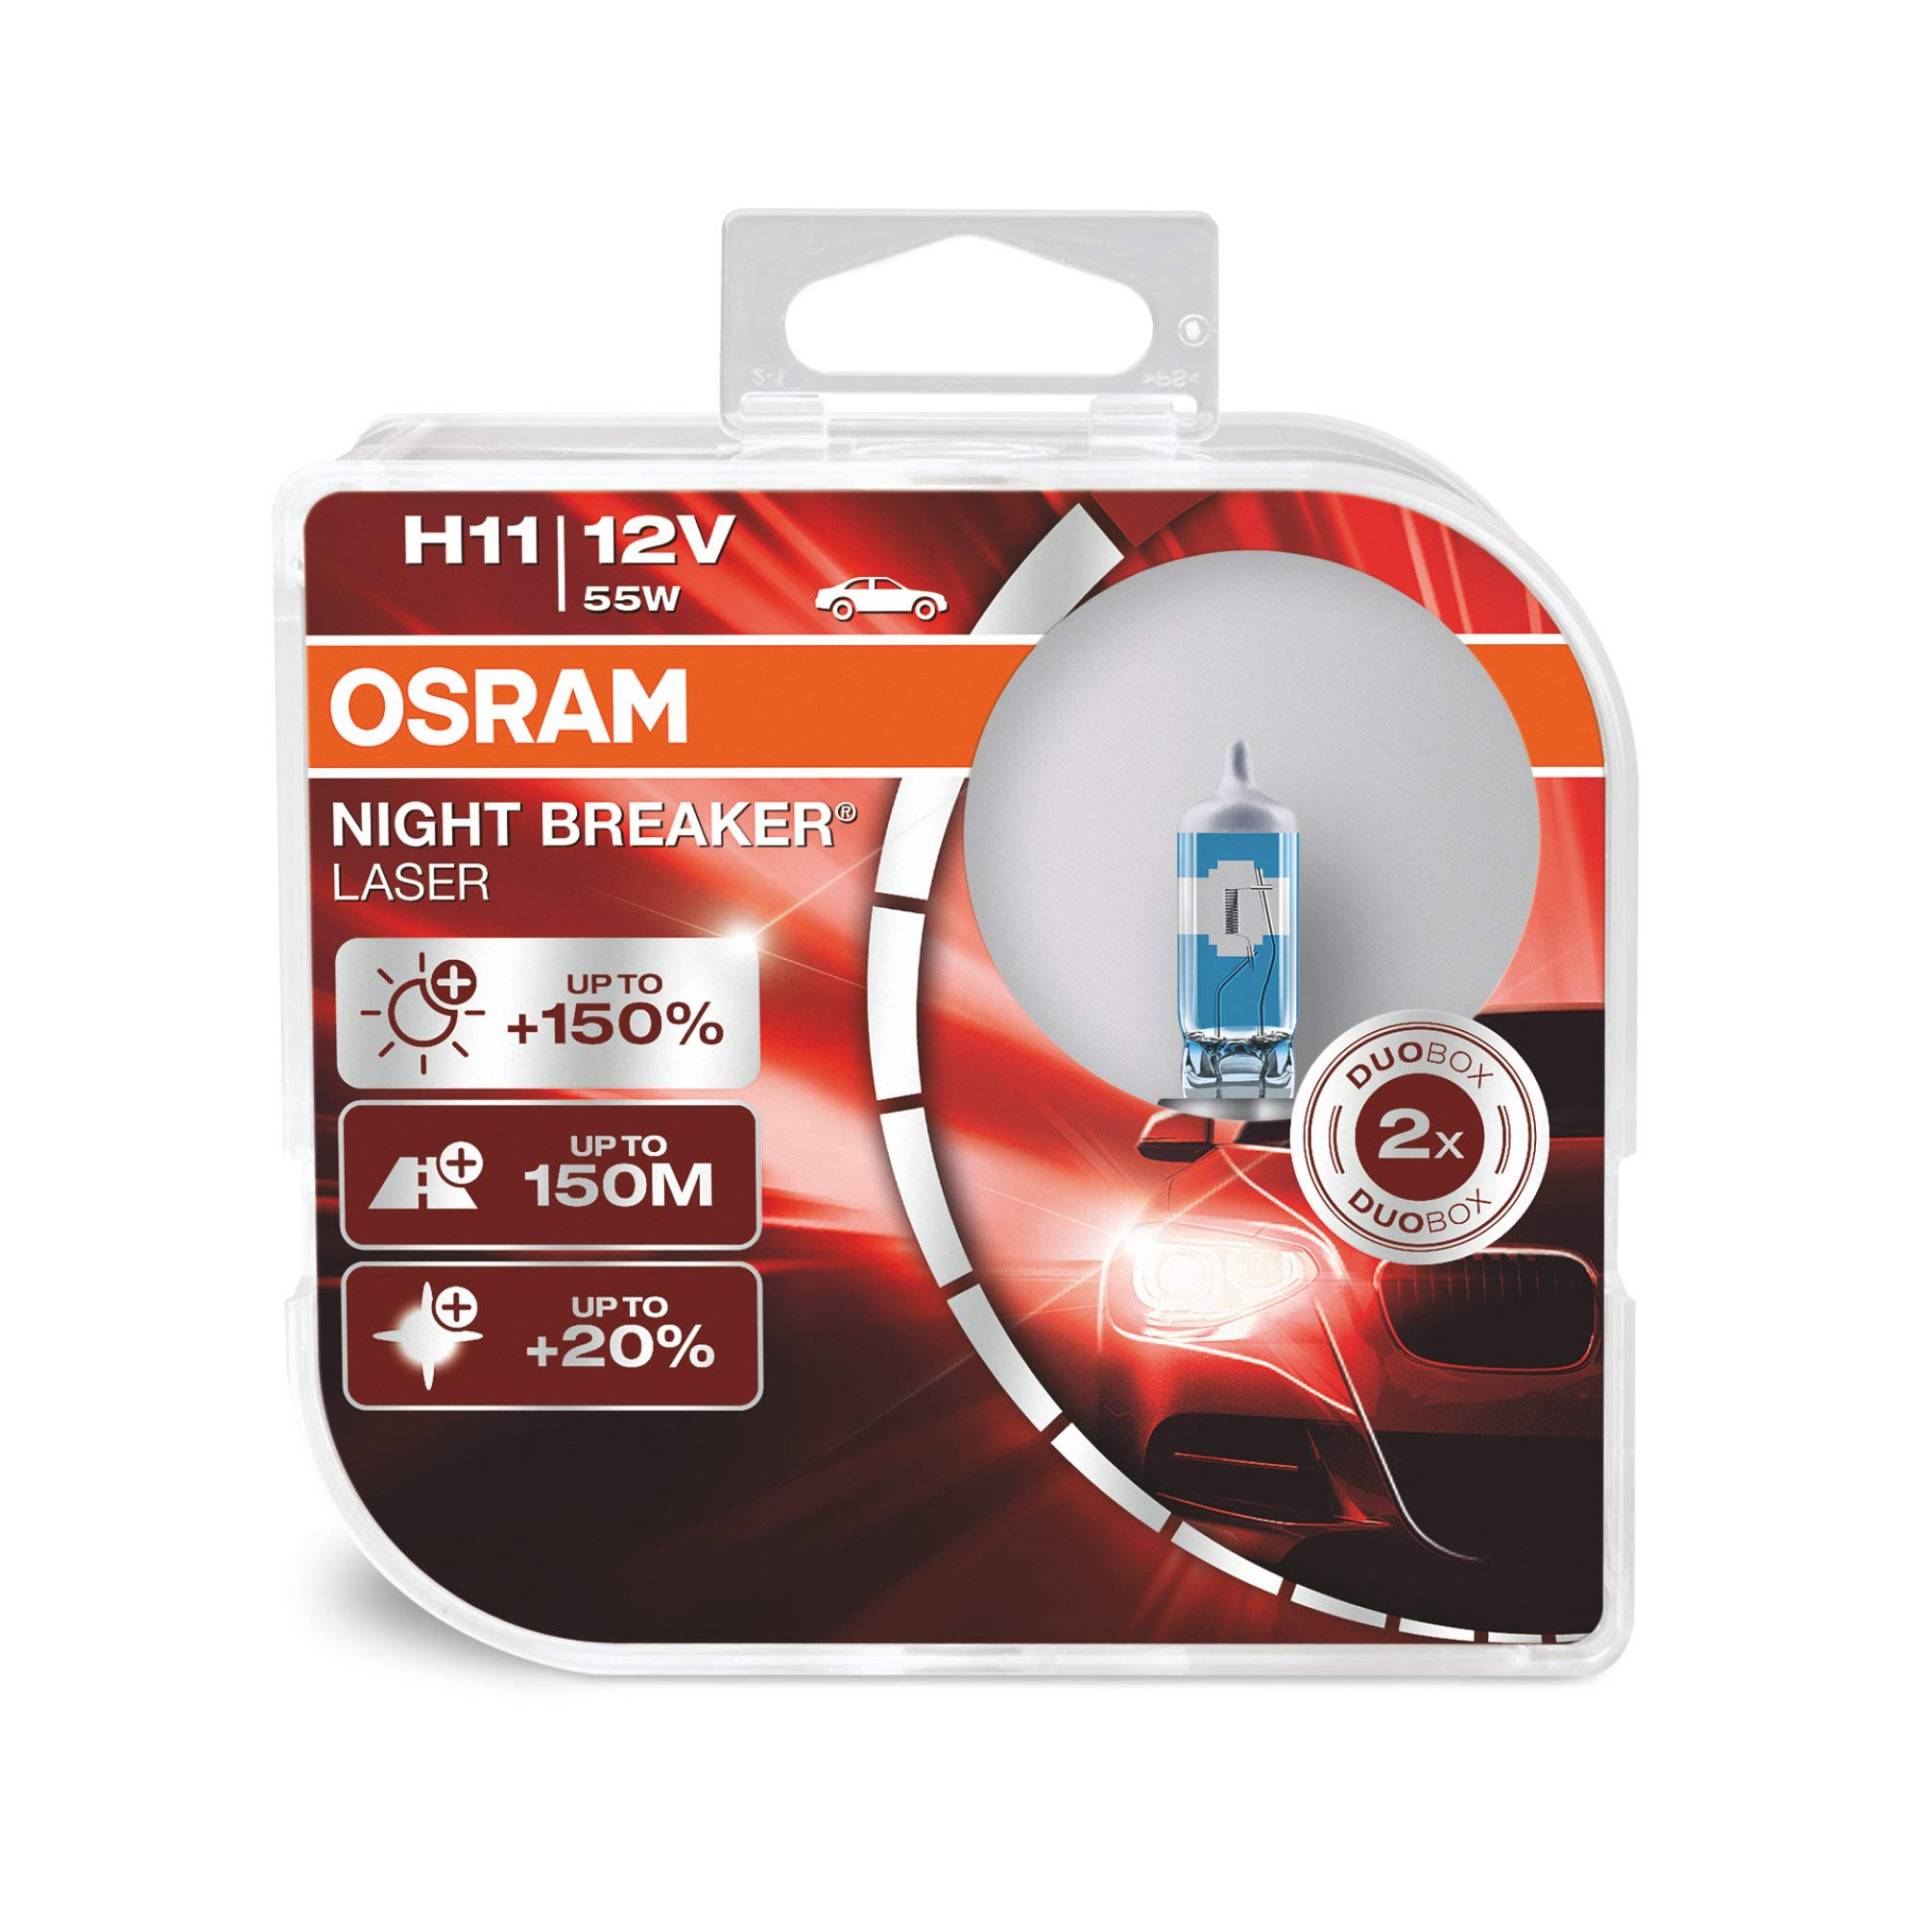 OSRAM NIGHT BREAKER LASER H11, +150% mehr Helligkeit, Halogen-Scheinwerferlampe, 64211NL-HCB, 12V PKW, Duo Box (2 Lampen) von Osram